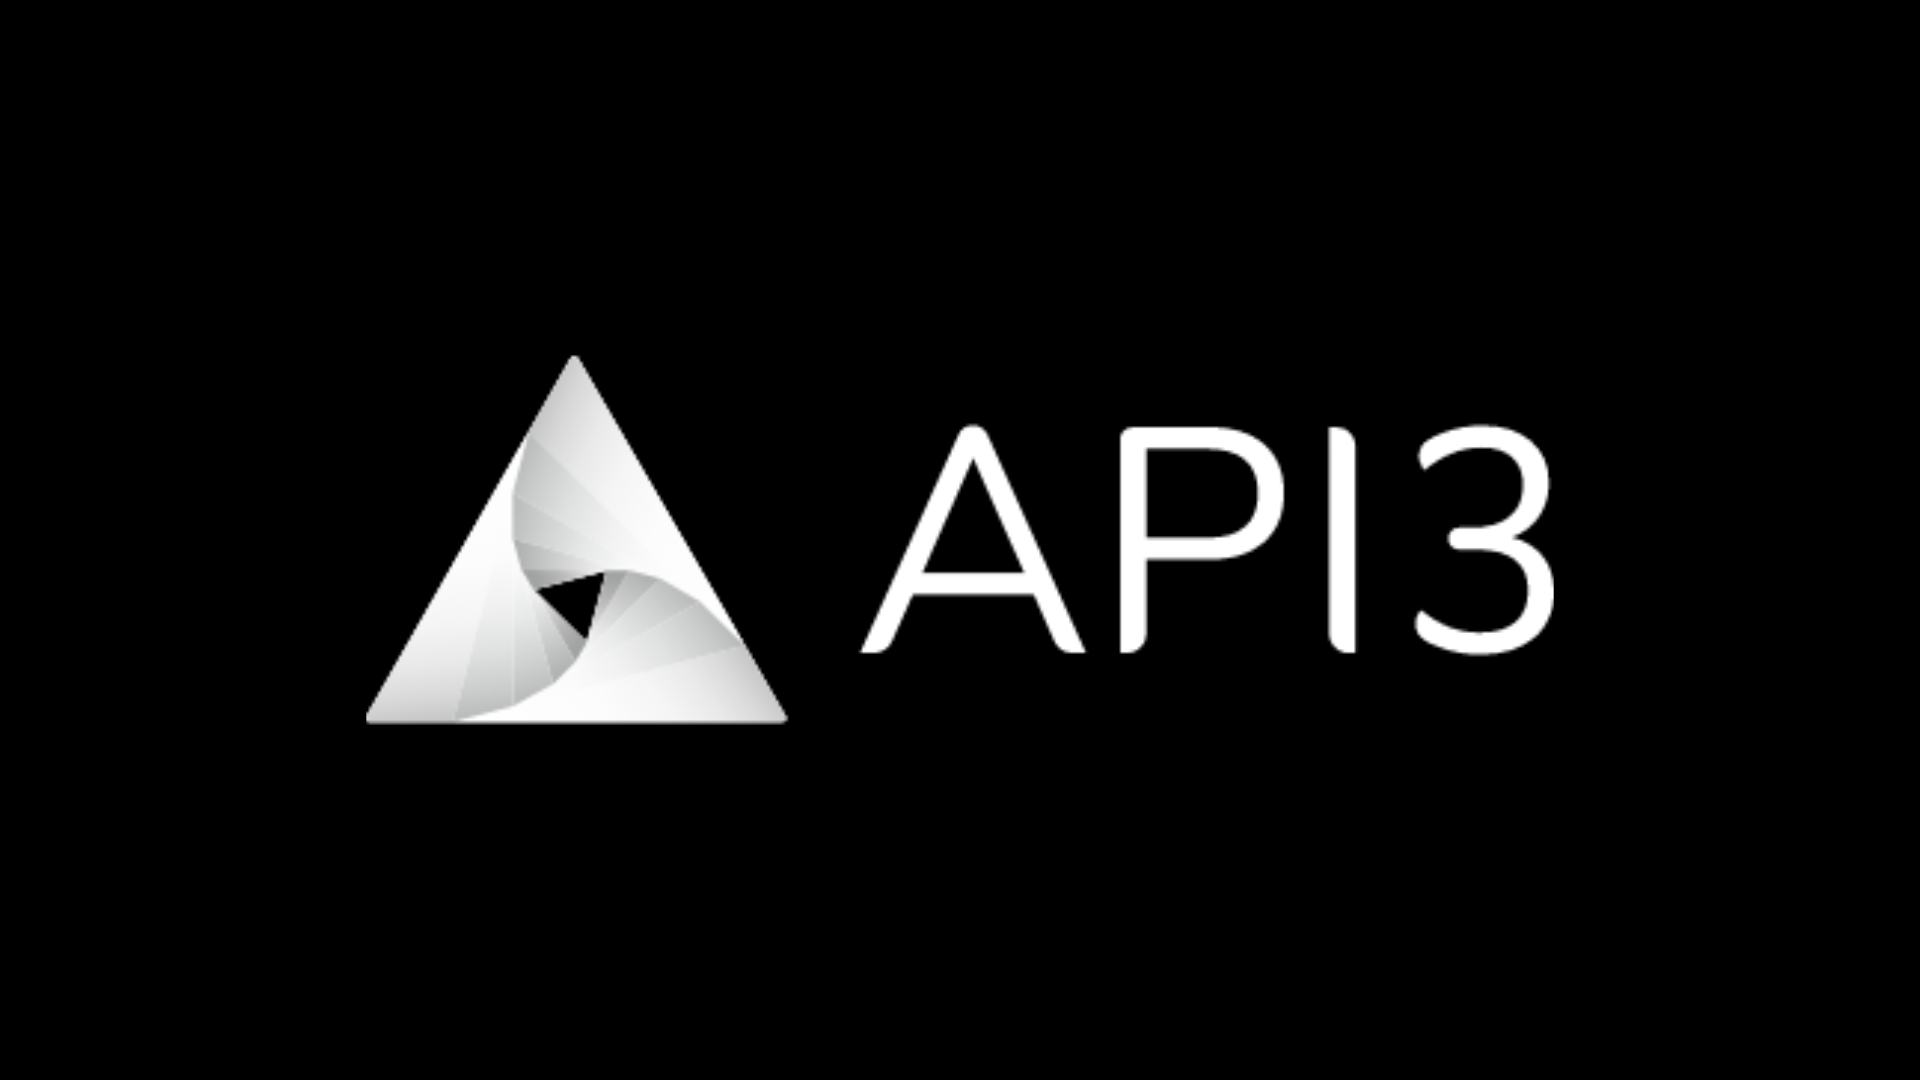 มาดูกันว่า API3 คืออะไร? เหรียญ API3 ใช้ทำอะไรได้บ้าง?